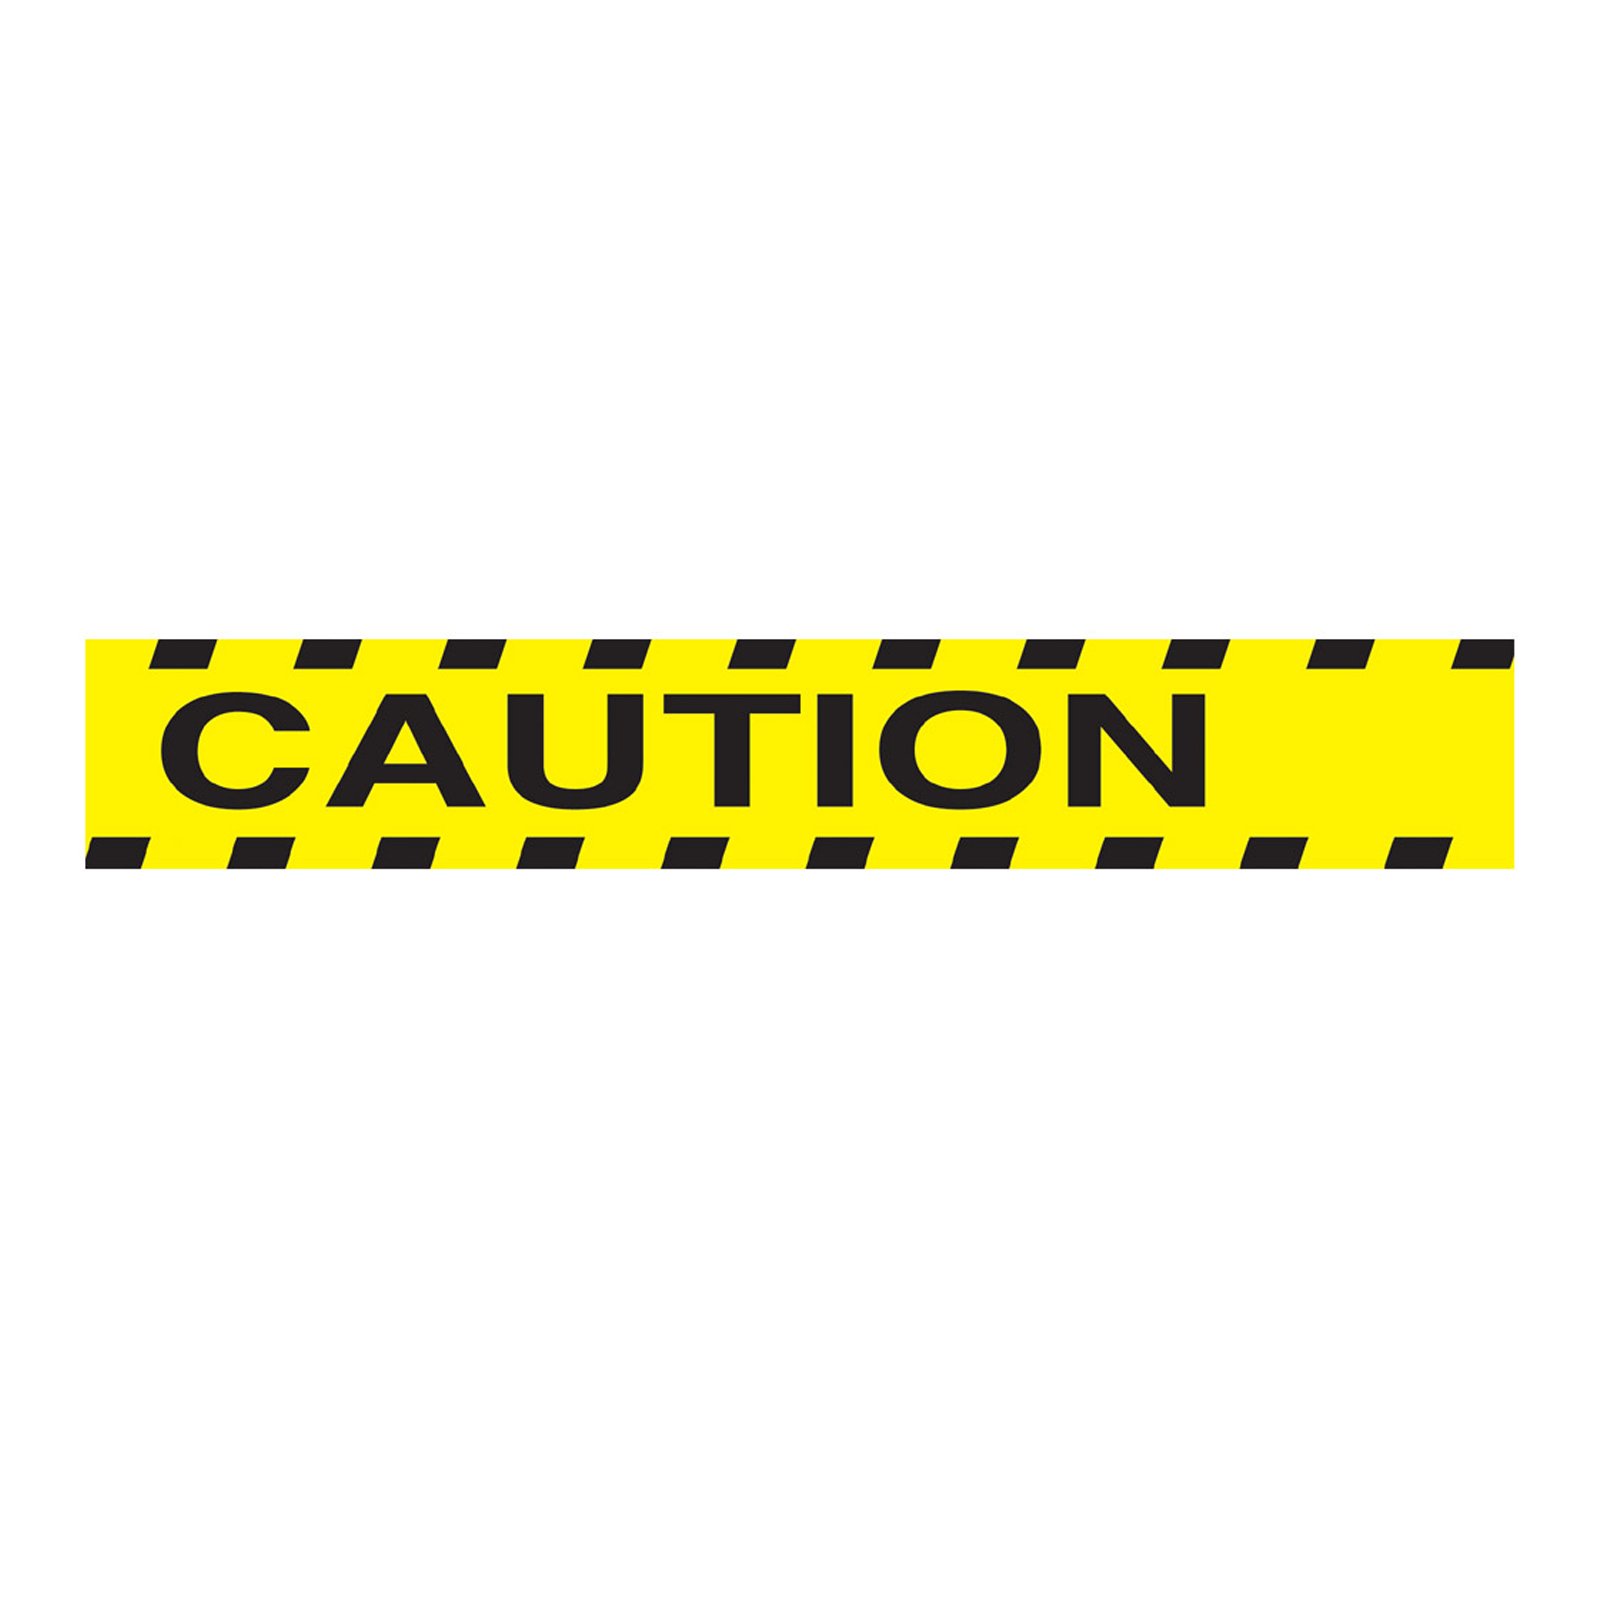 caution clipart caution tape